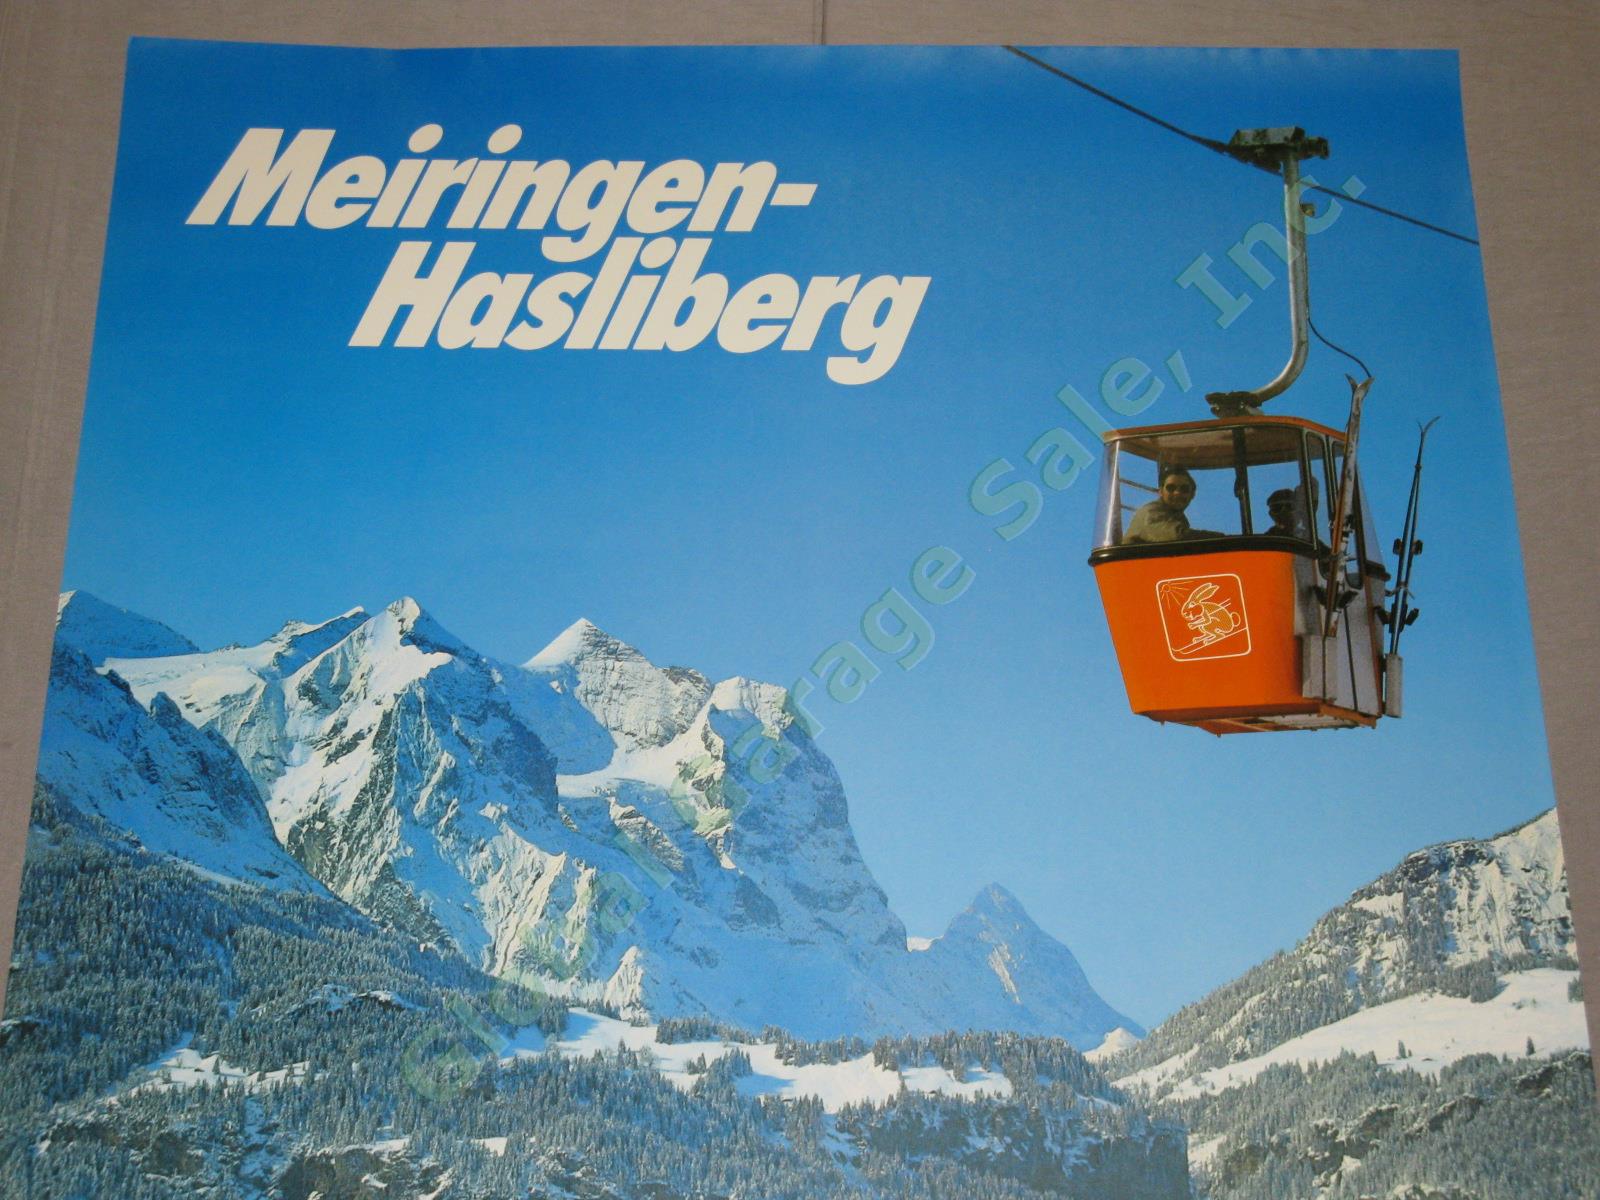 Vtg 1960s 1970s Swiss Travel Poster Meiringen-Hasliberg Ski Resort Switzerland 1